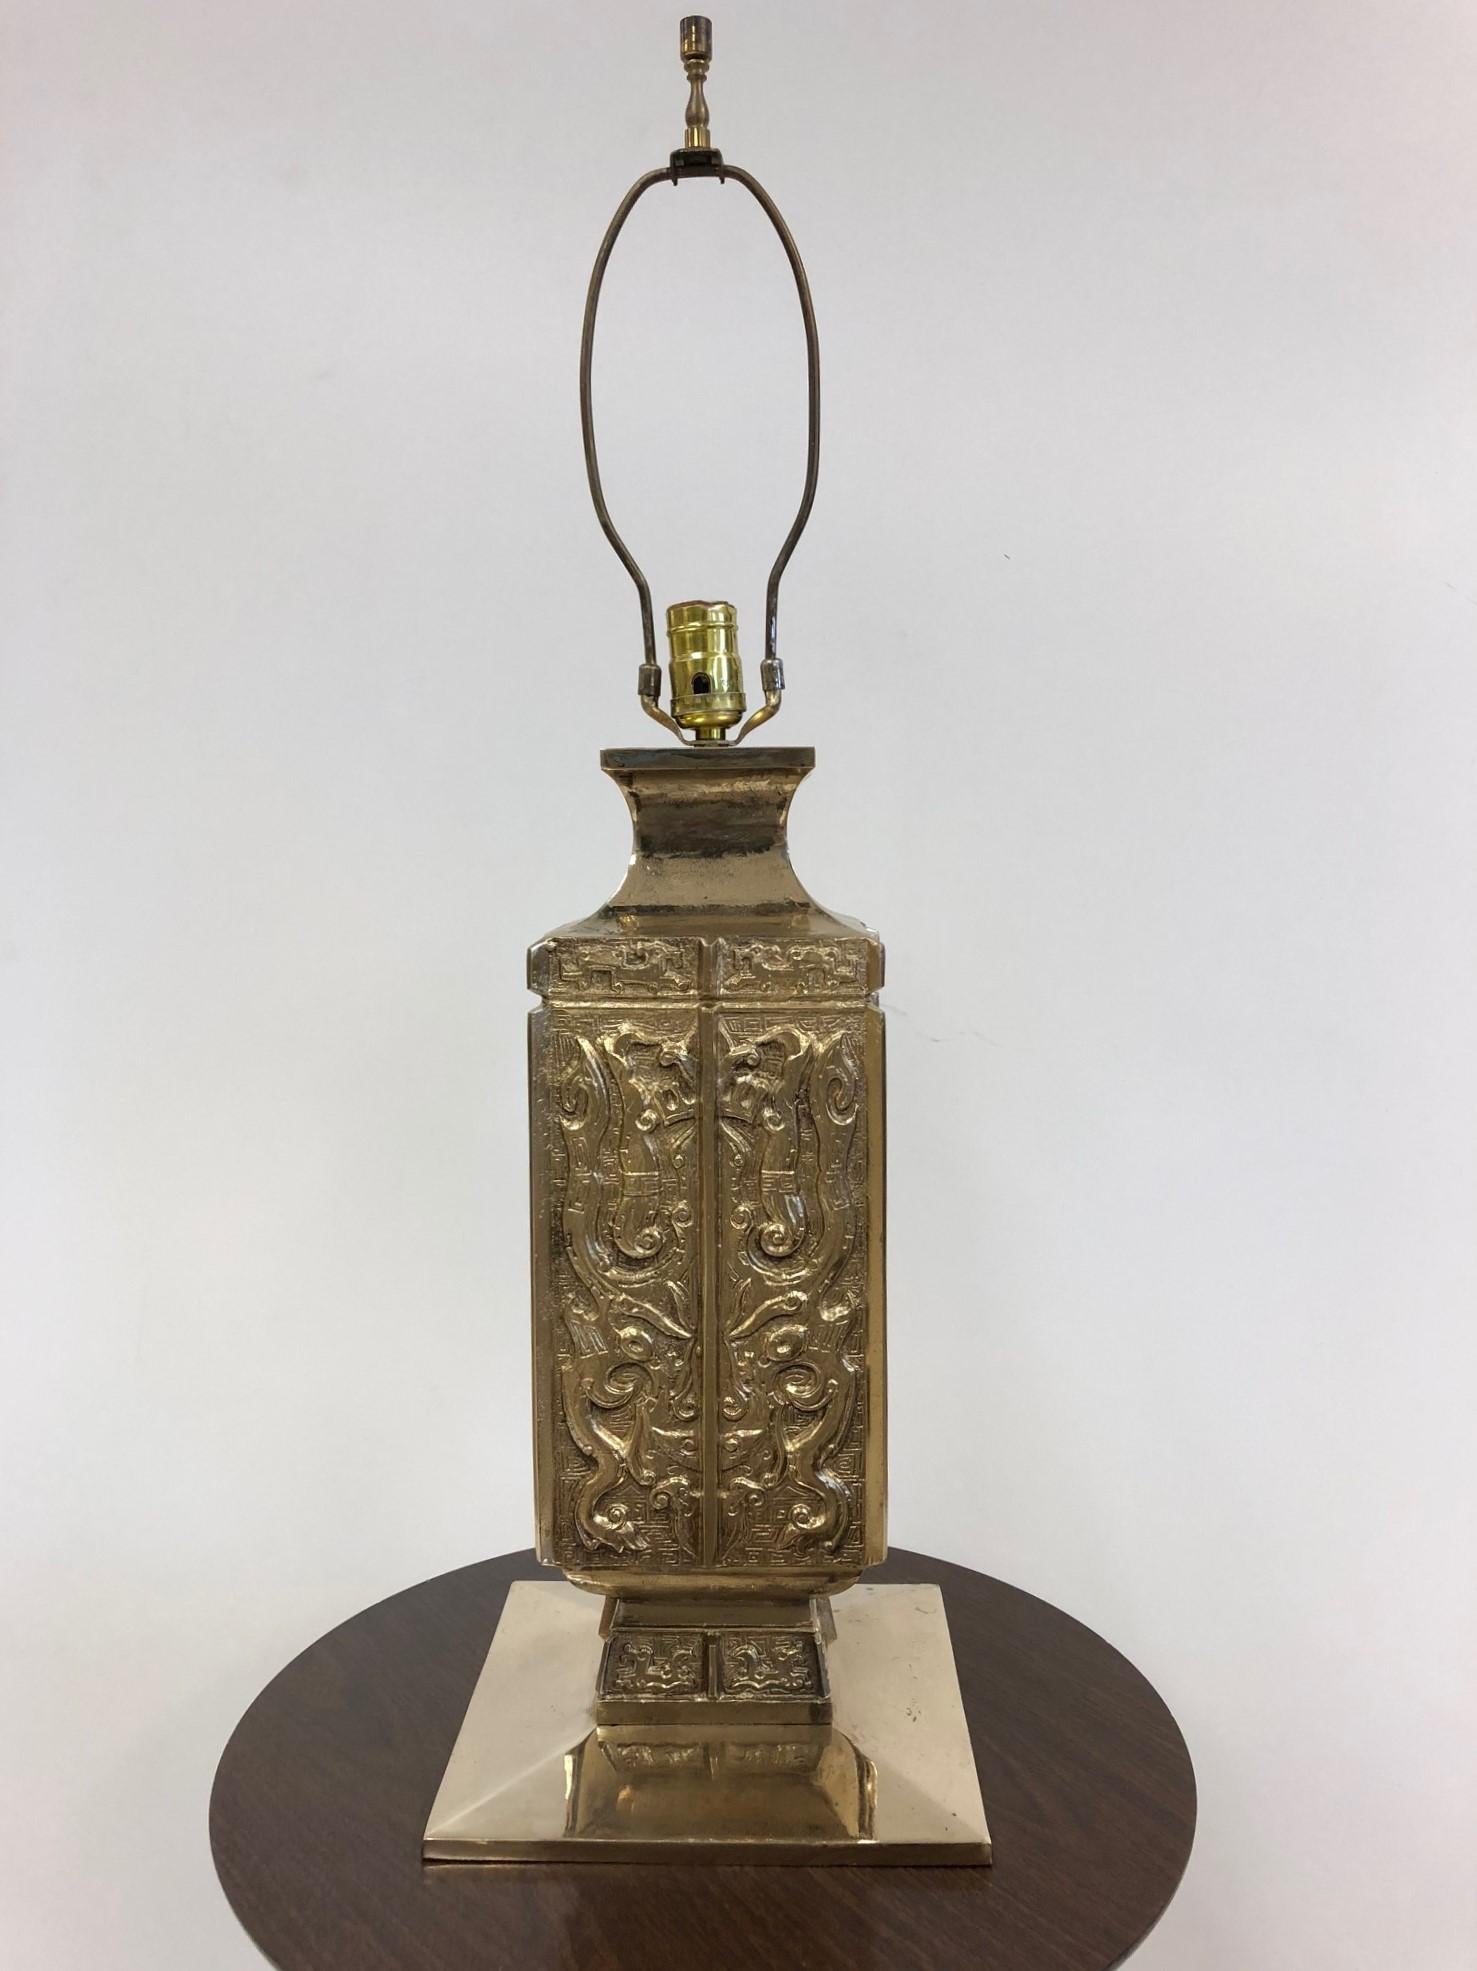 Exquisites Paar asiatischer Lampen aus Bronze. Diese Lampen sind gut gestaltet, schwer und würden in einem asiatisch inspirierten Raum besonders gut aussehen. James-Mont-Stil.
Die Basis misst: 9.25